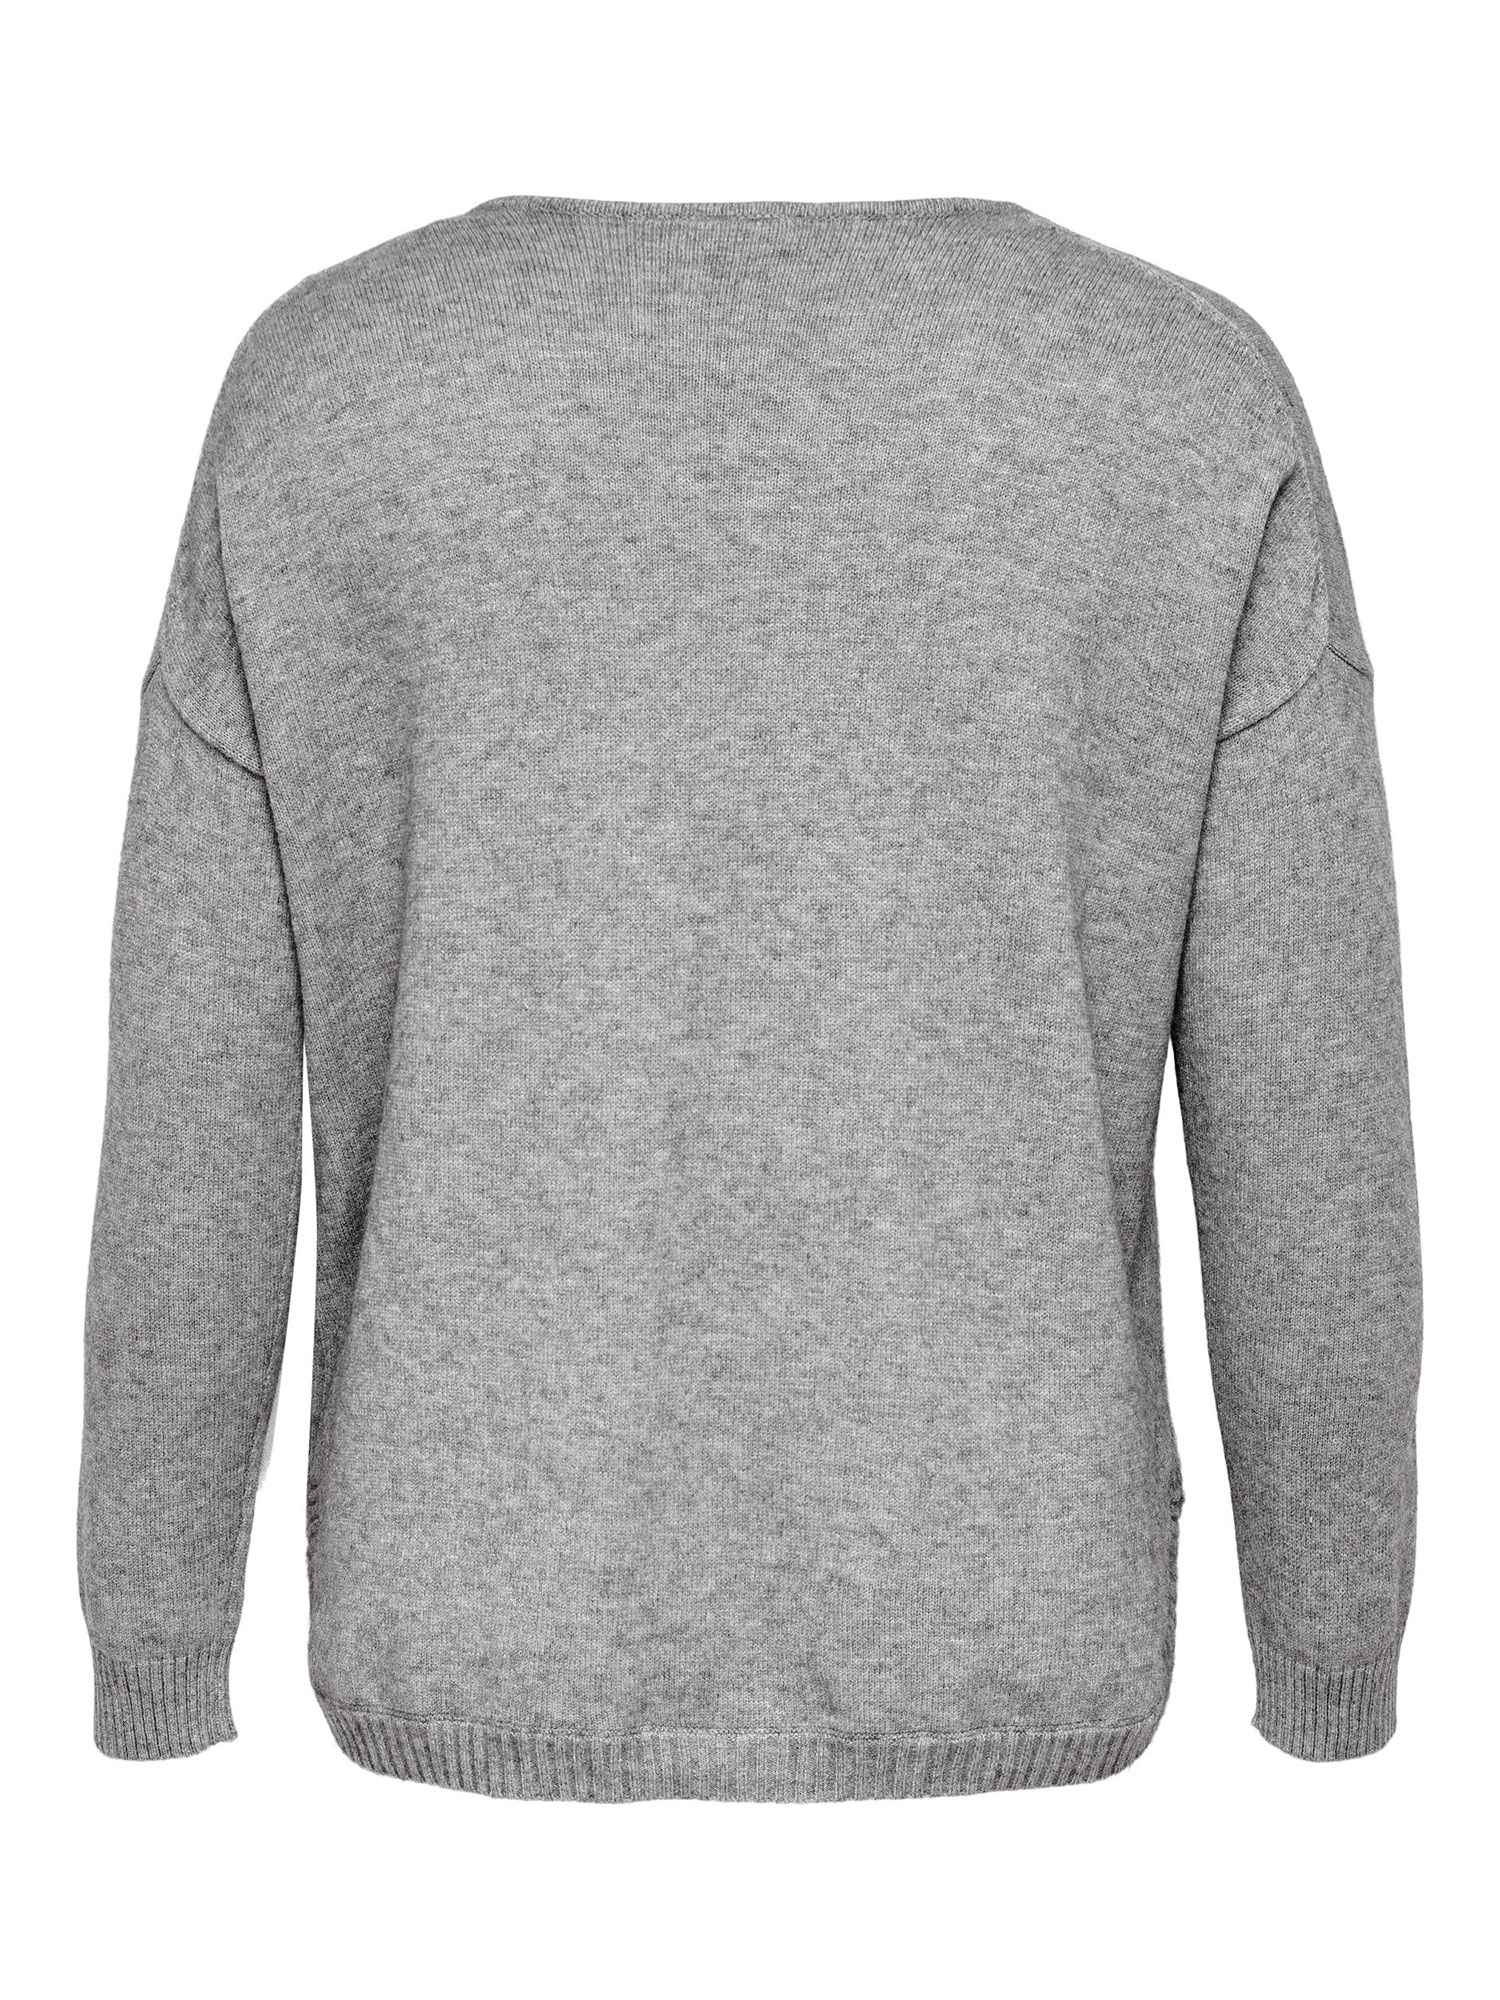  MARGARETA - Lys grå strikket genser fra Only Carmakoma